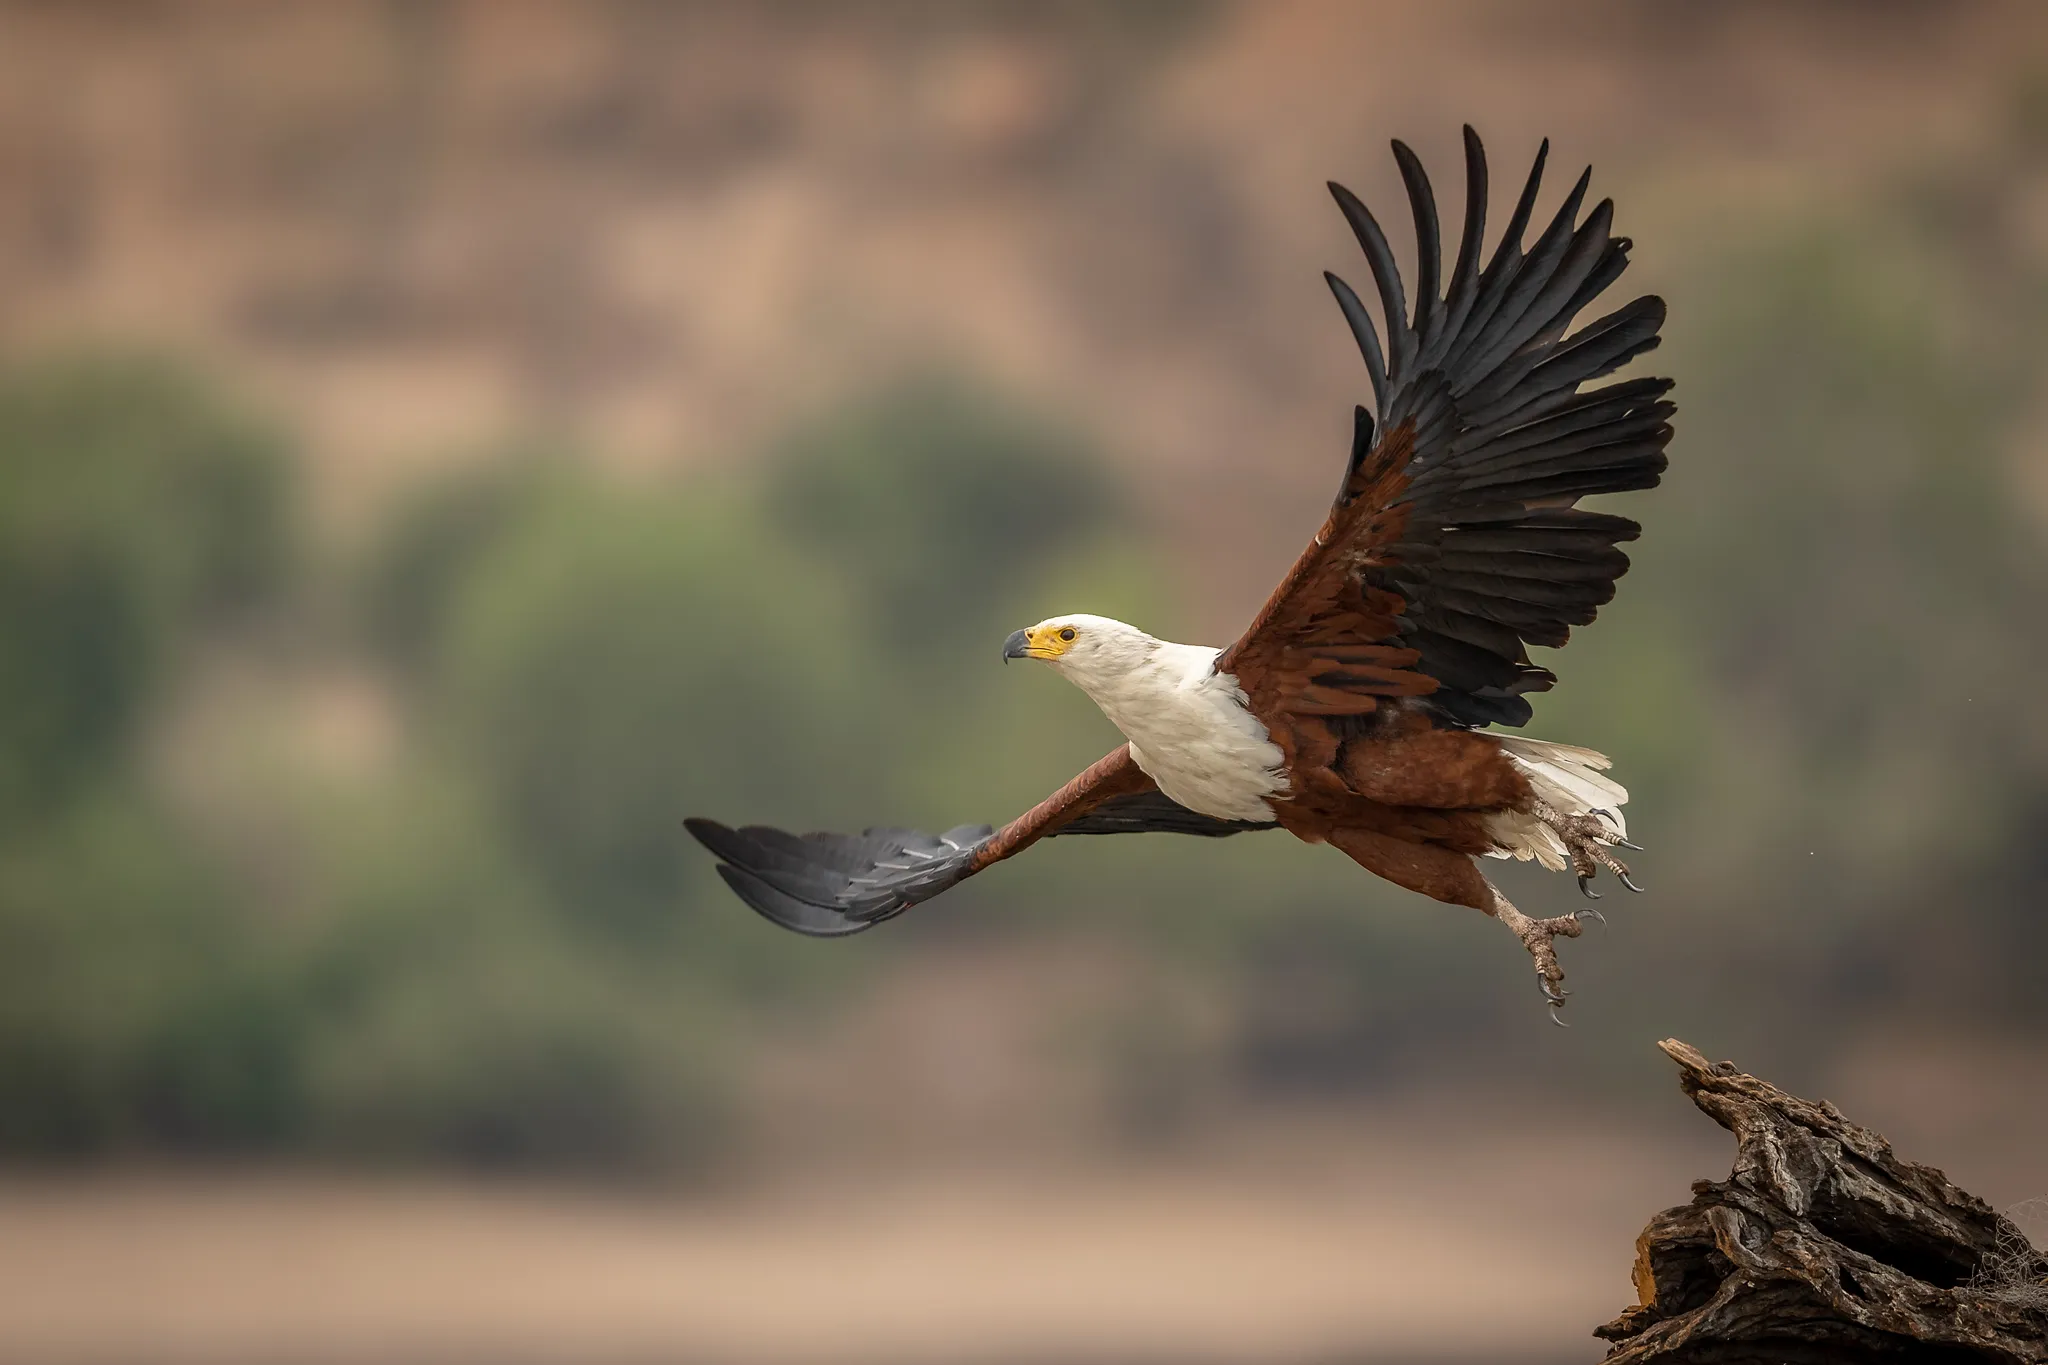 A fish Eagle at take off